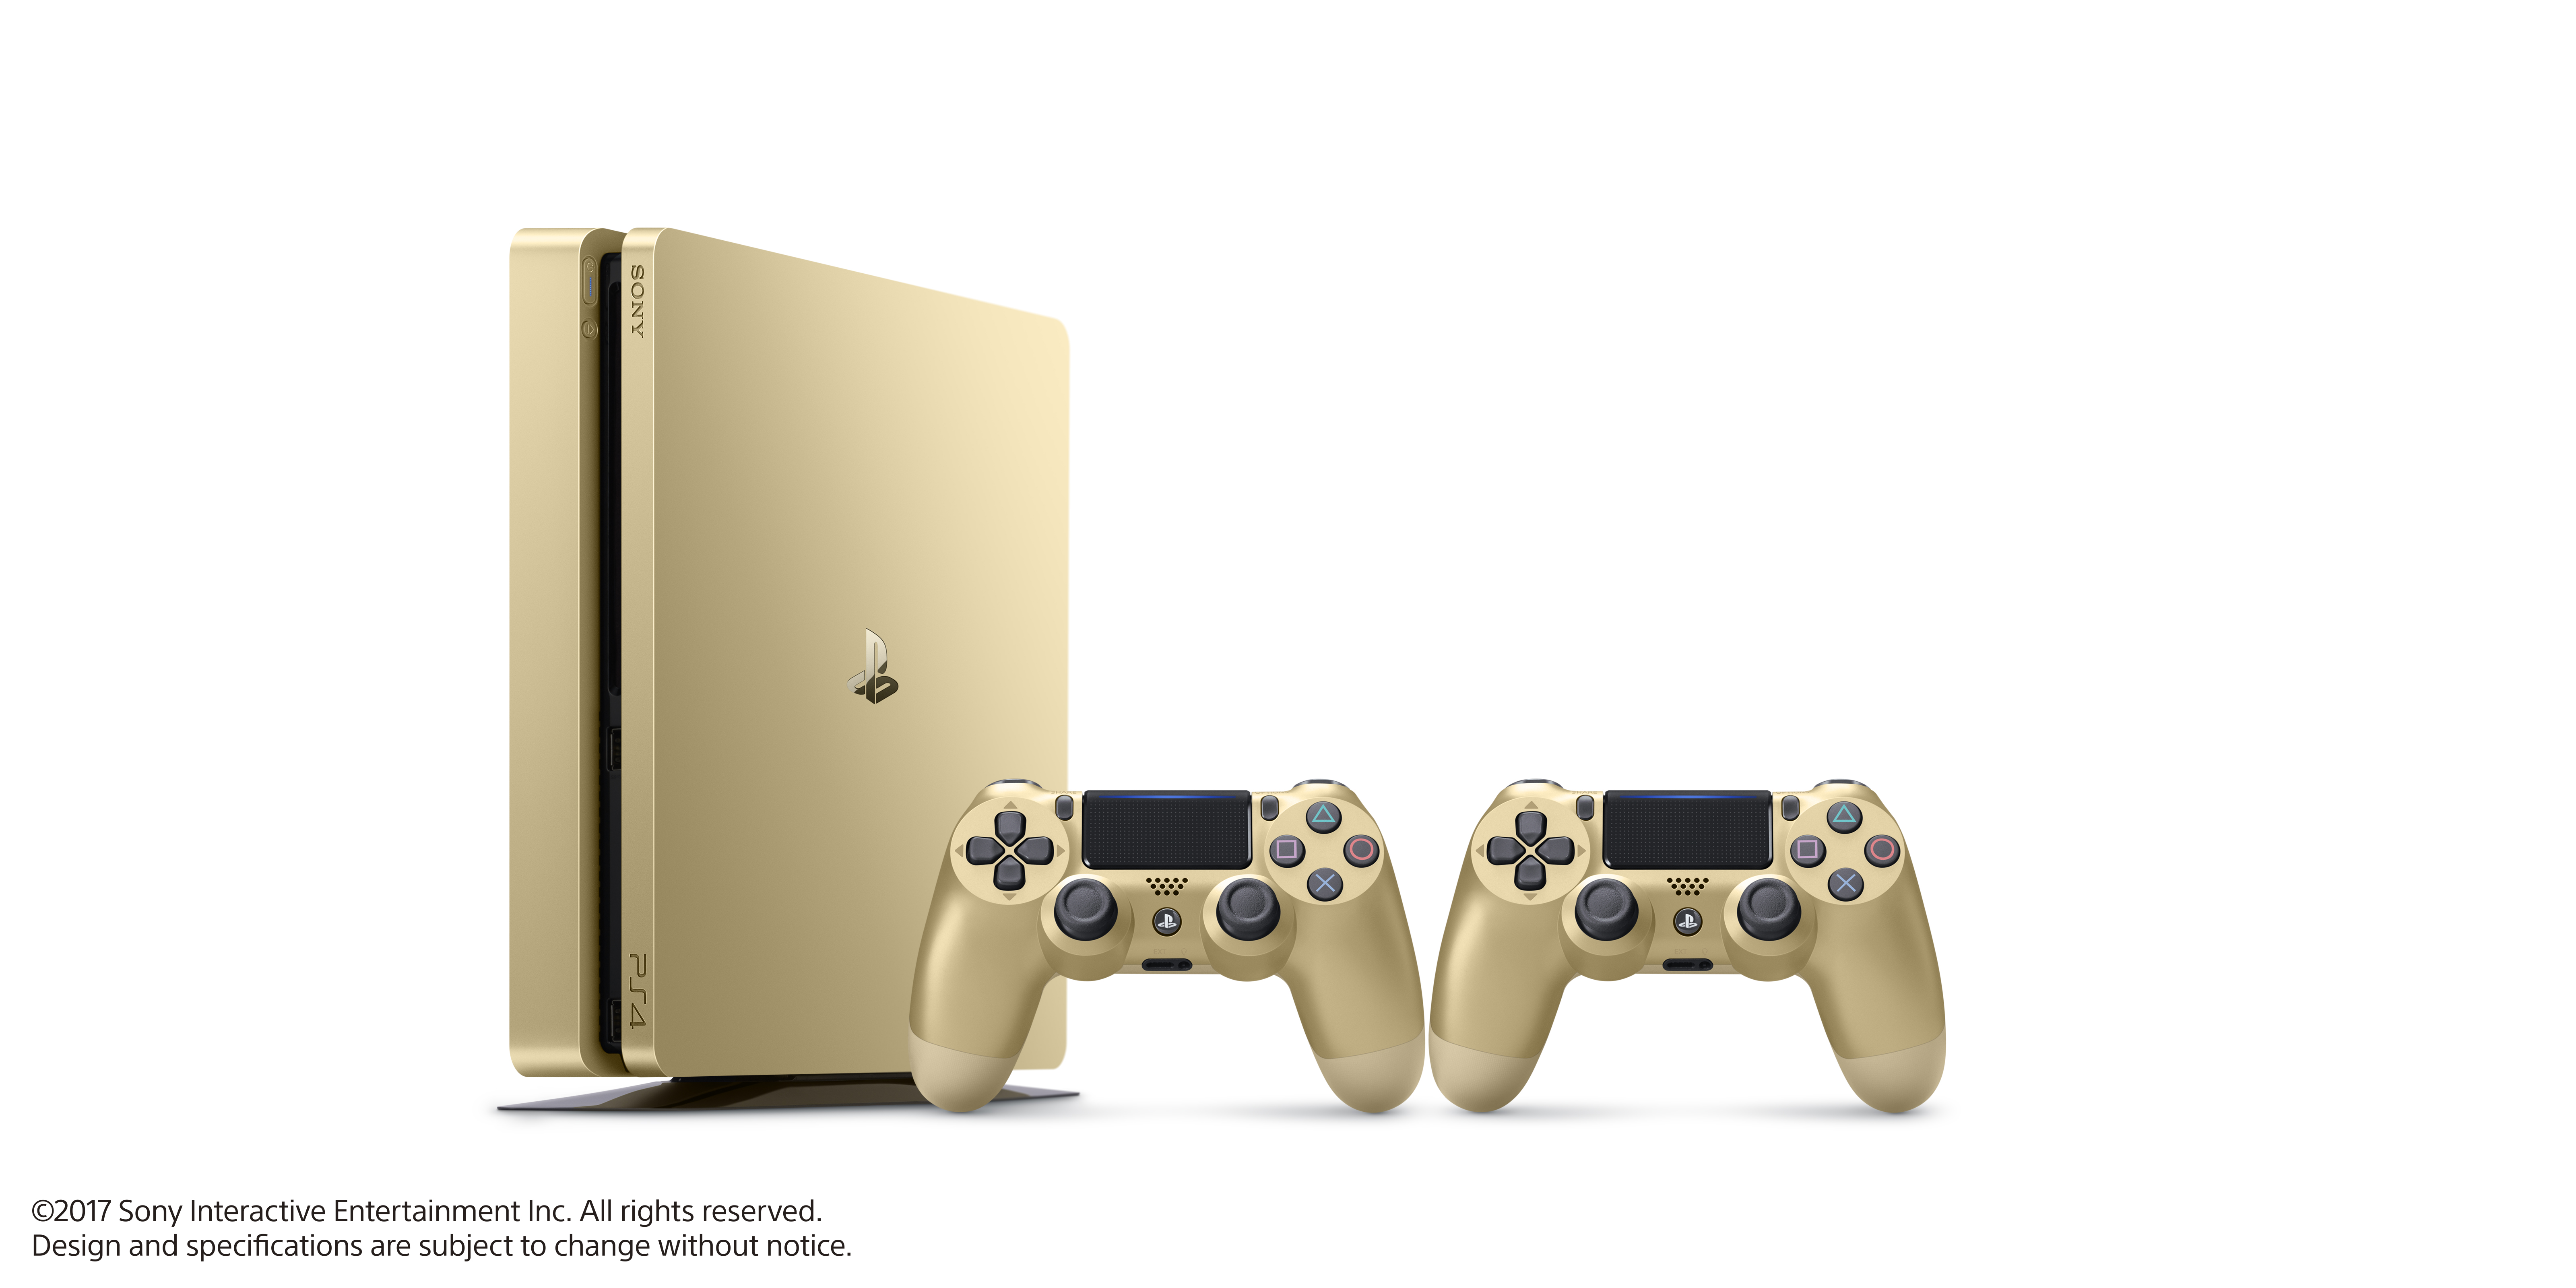 La Playstation 4 Slim Gold et Silver annoncée (2)